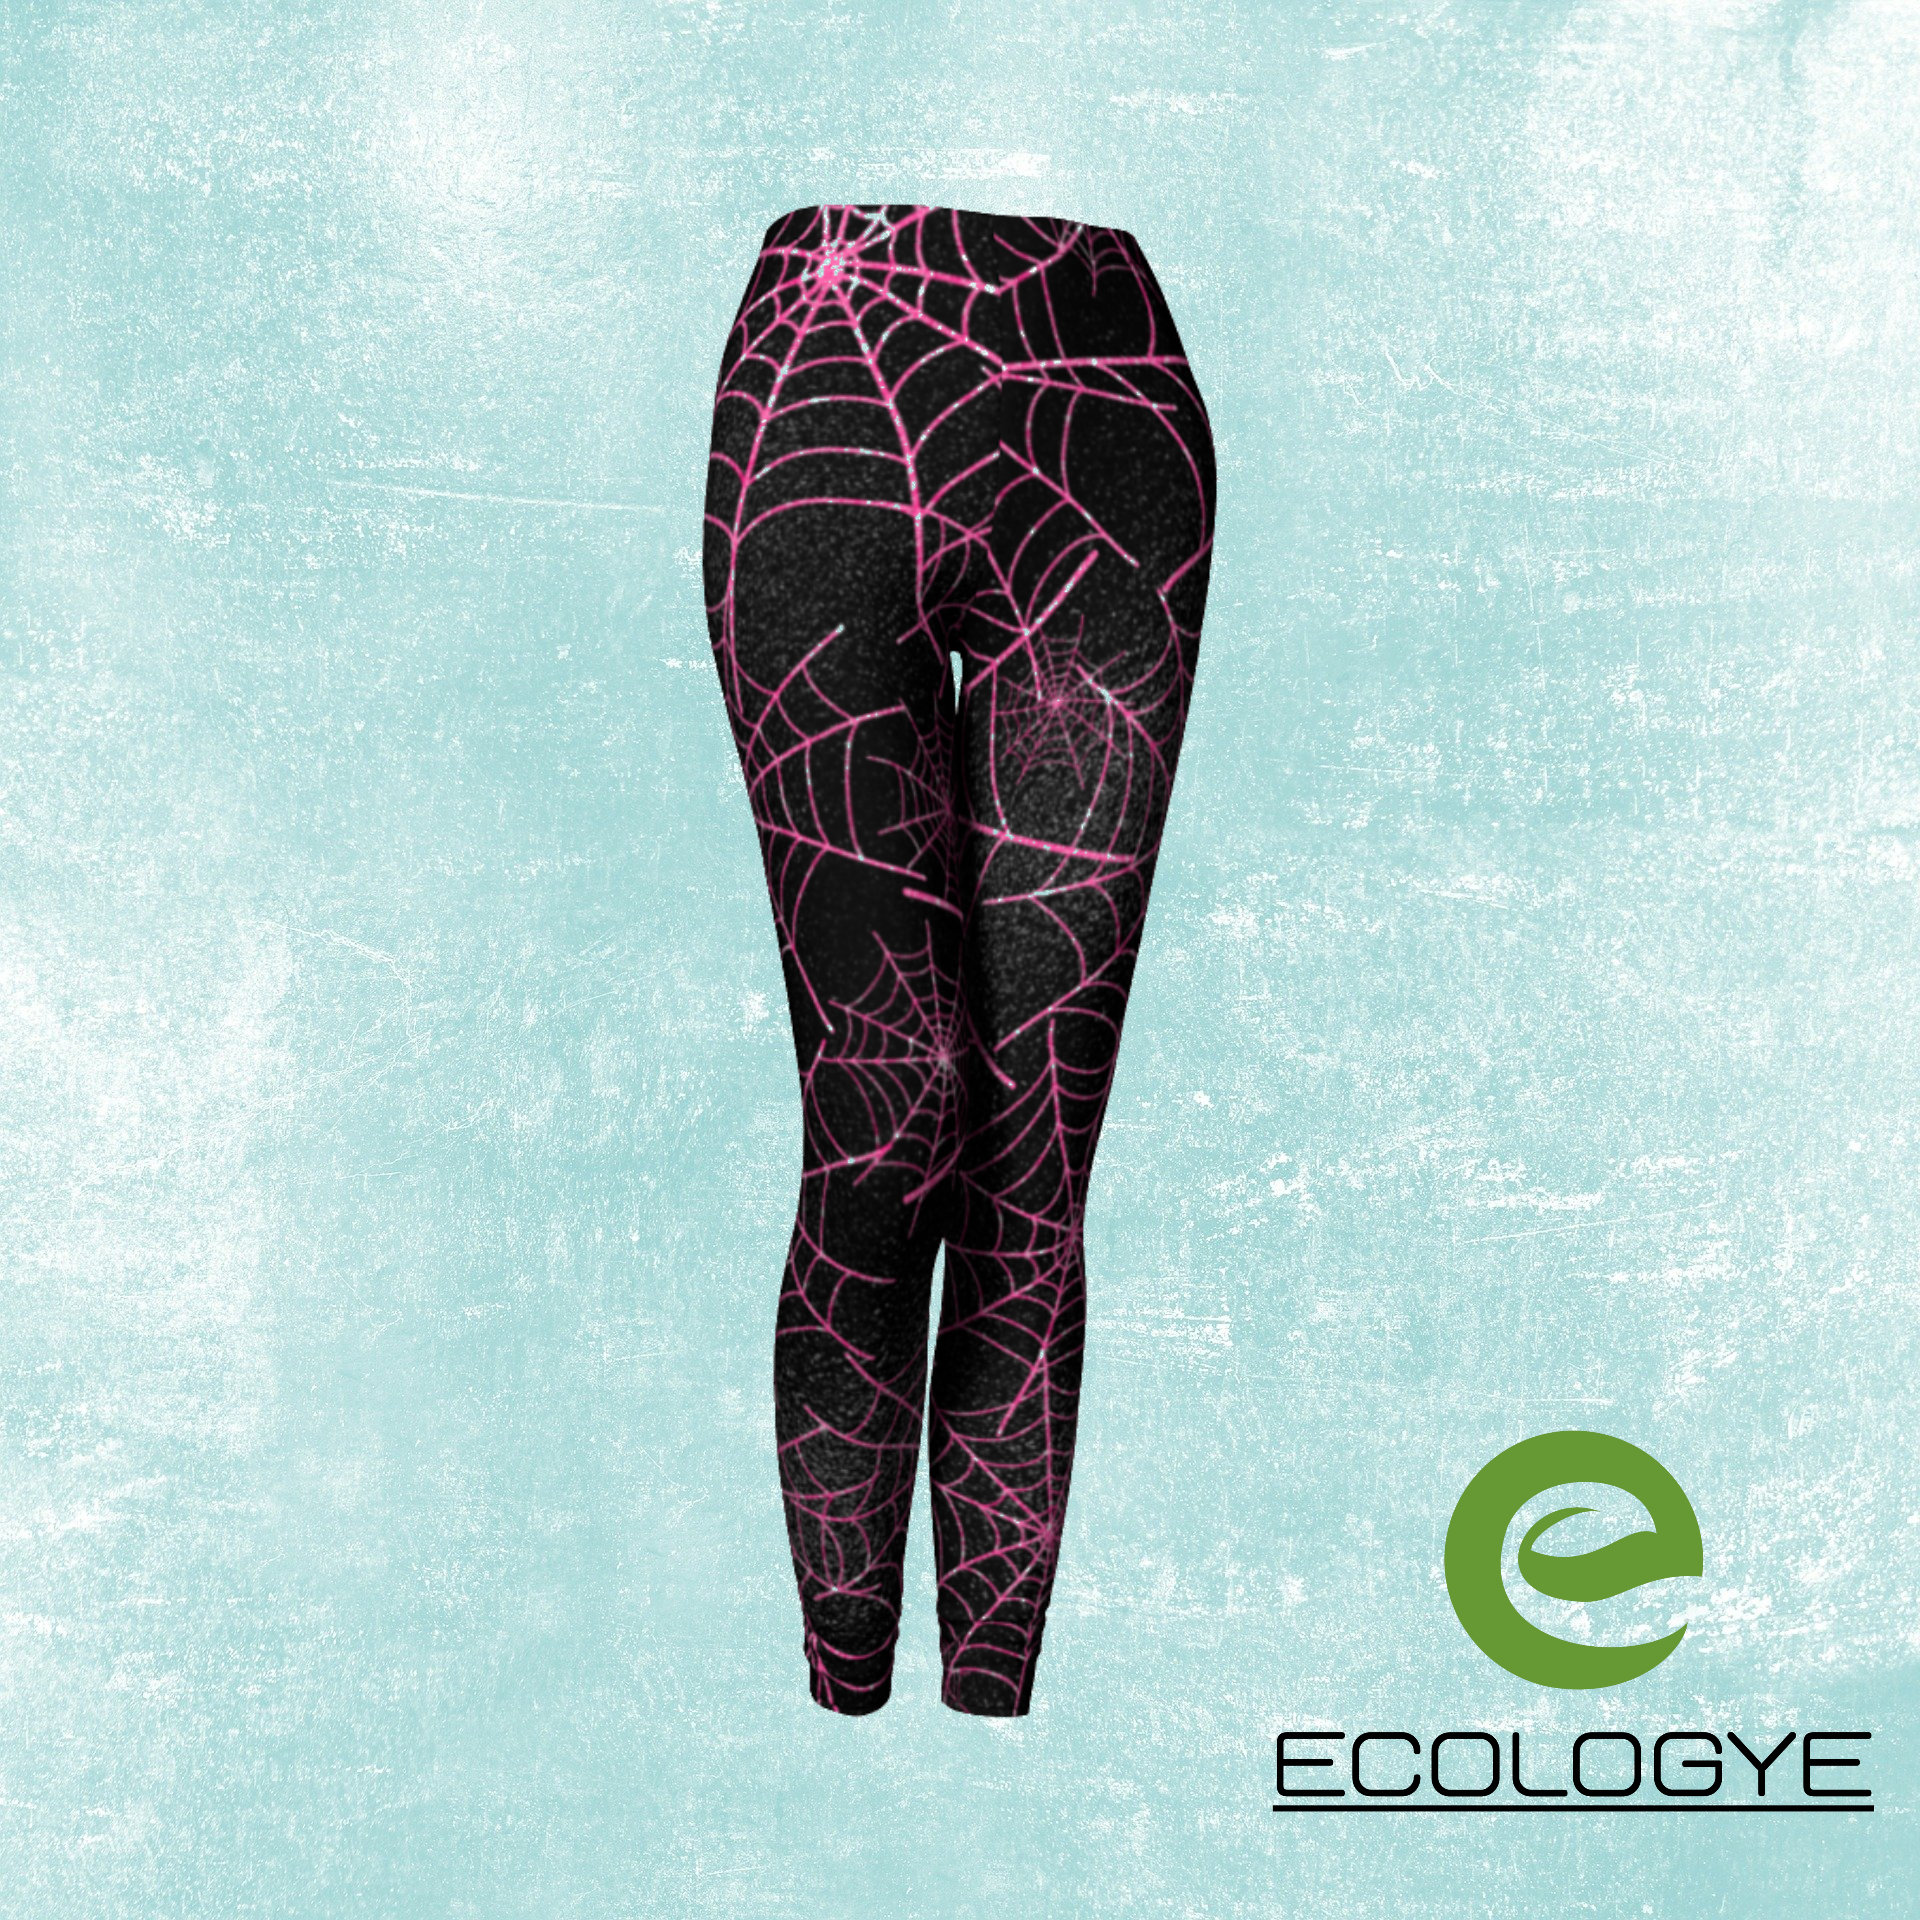 Cobweb LEGGINGS HALLOWEEN Leggings for Women Yoga Pants for